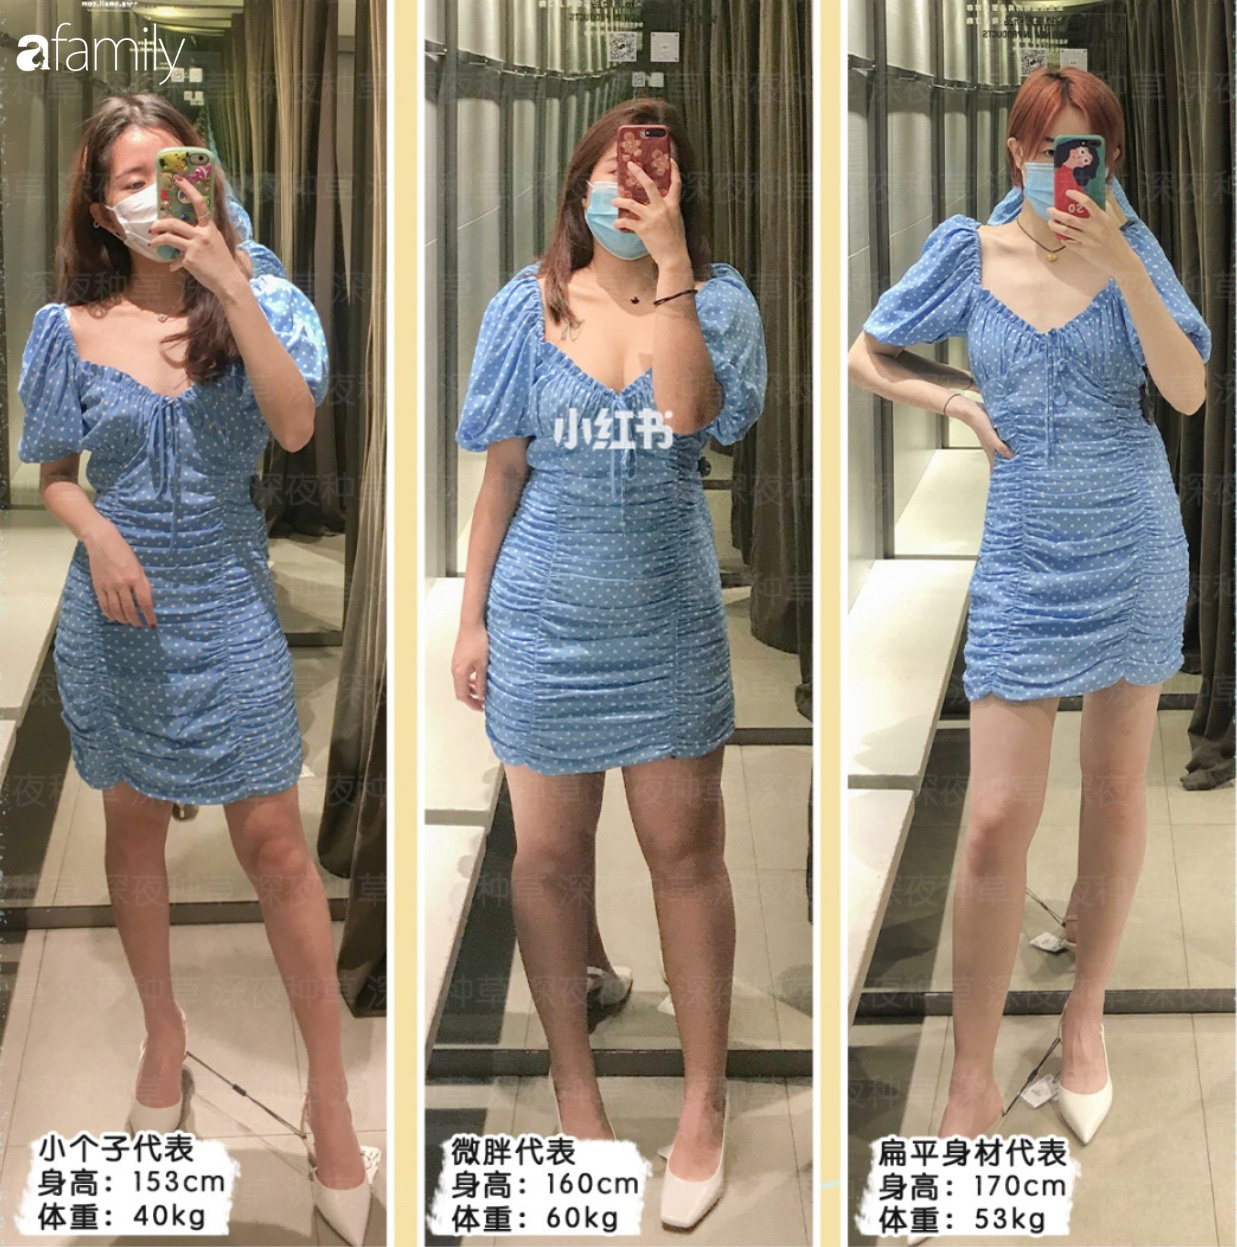 Thử diện 6 mẫu váy hot hit của Zara, 3 cô nàng từ béo đến gầy đã giúp các chị em tìm ra item phù hợp nhất với vóc dáng - Ảnh 1.